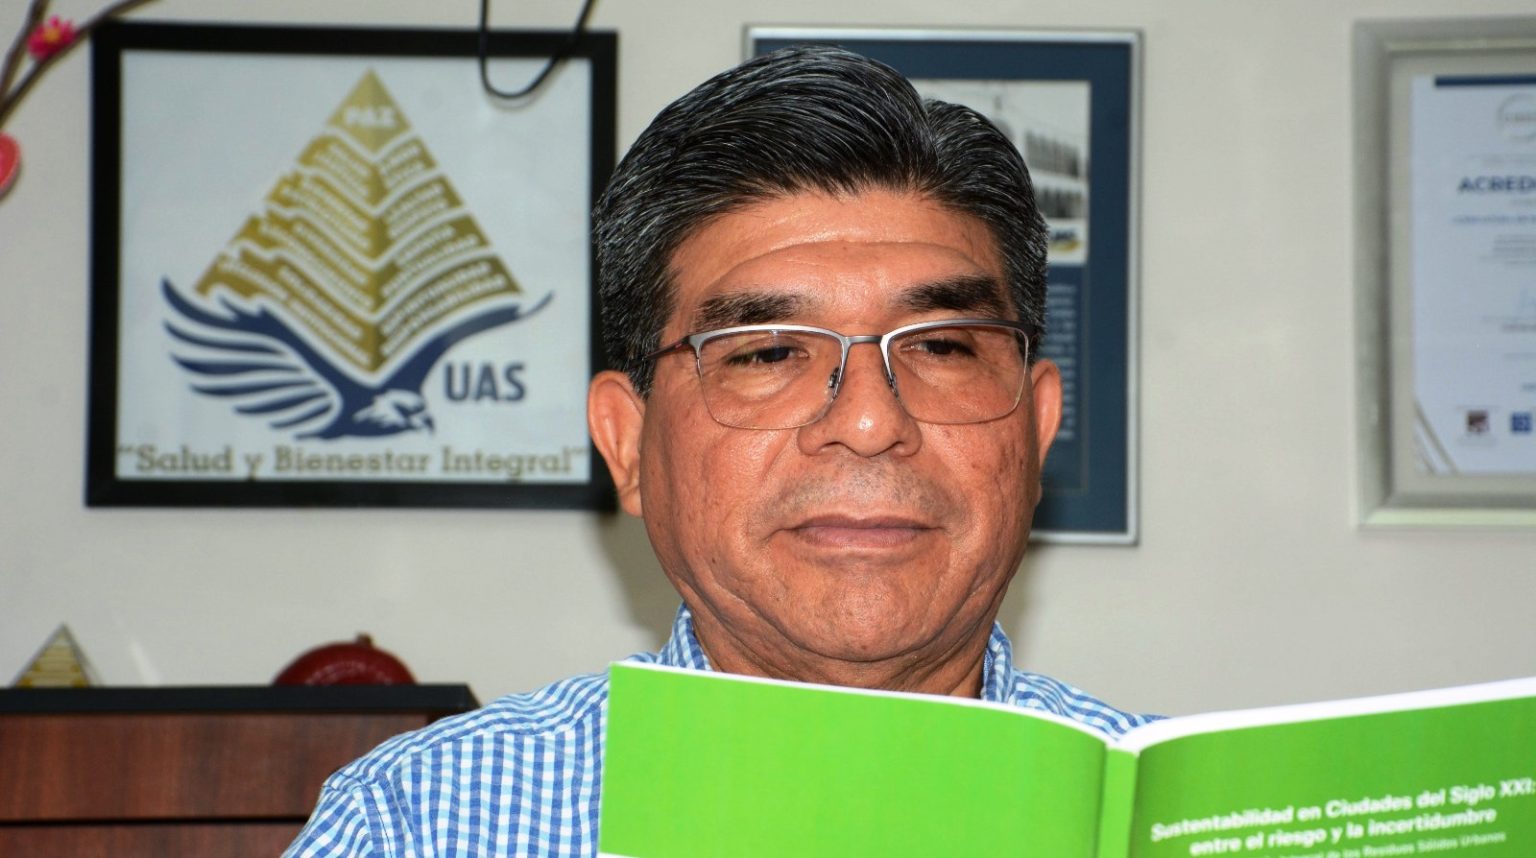 Luis Armando Becerra Pérez Llama especialista de la UAS a diputados a darle solución al problema de la basura en el puerto de Mazatlán 2023